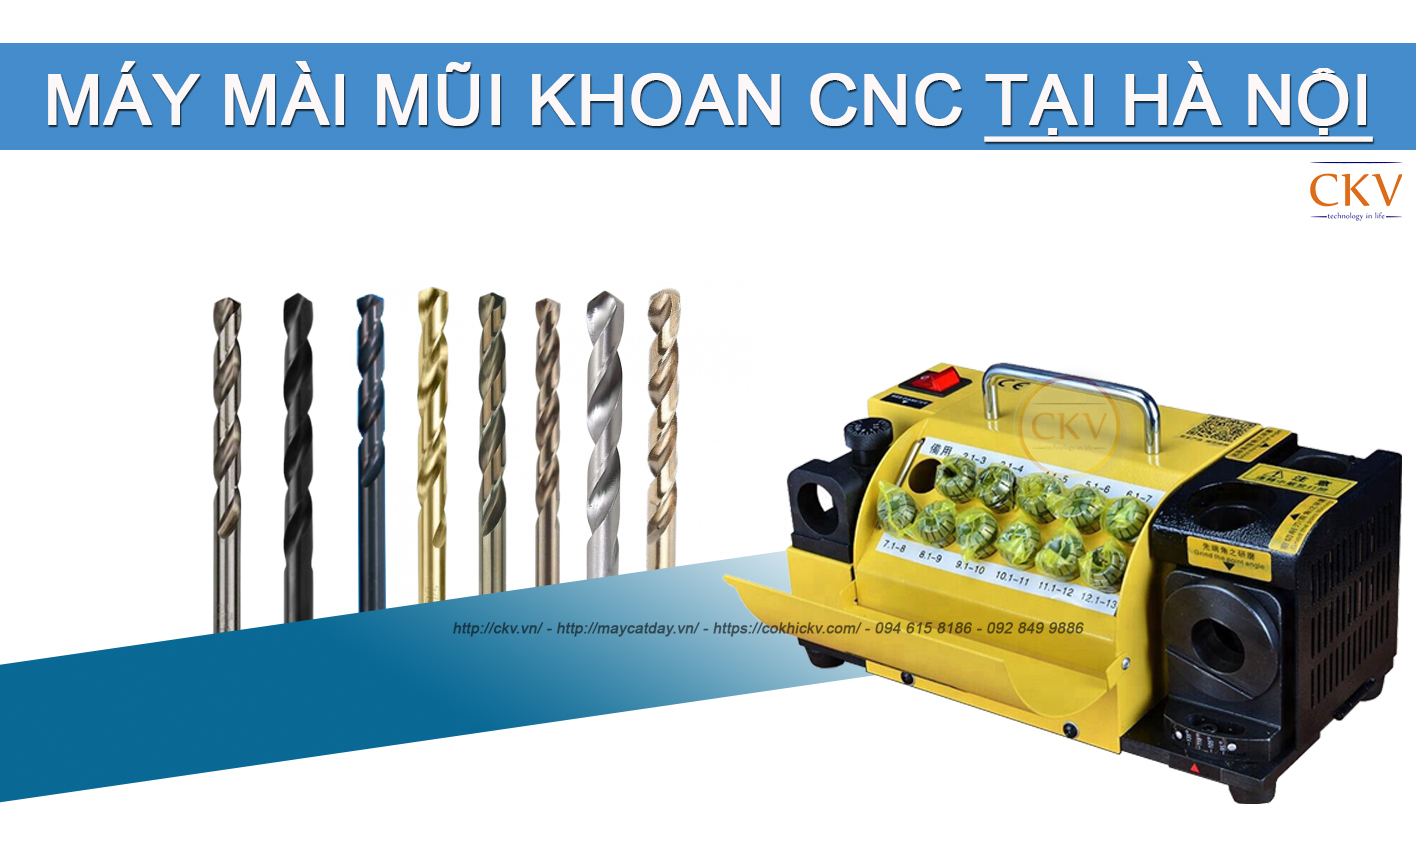 Đại lí máy mài mũi khoan CNC tại Hà Nội phân phối chính hãng